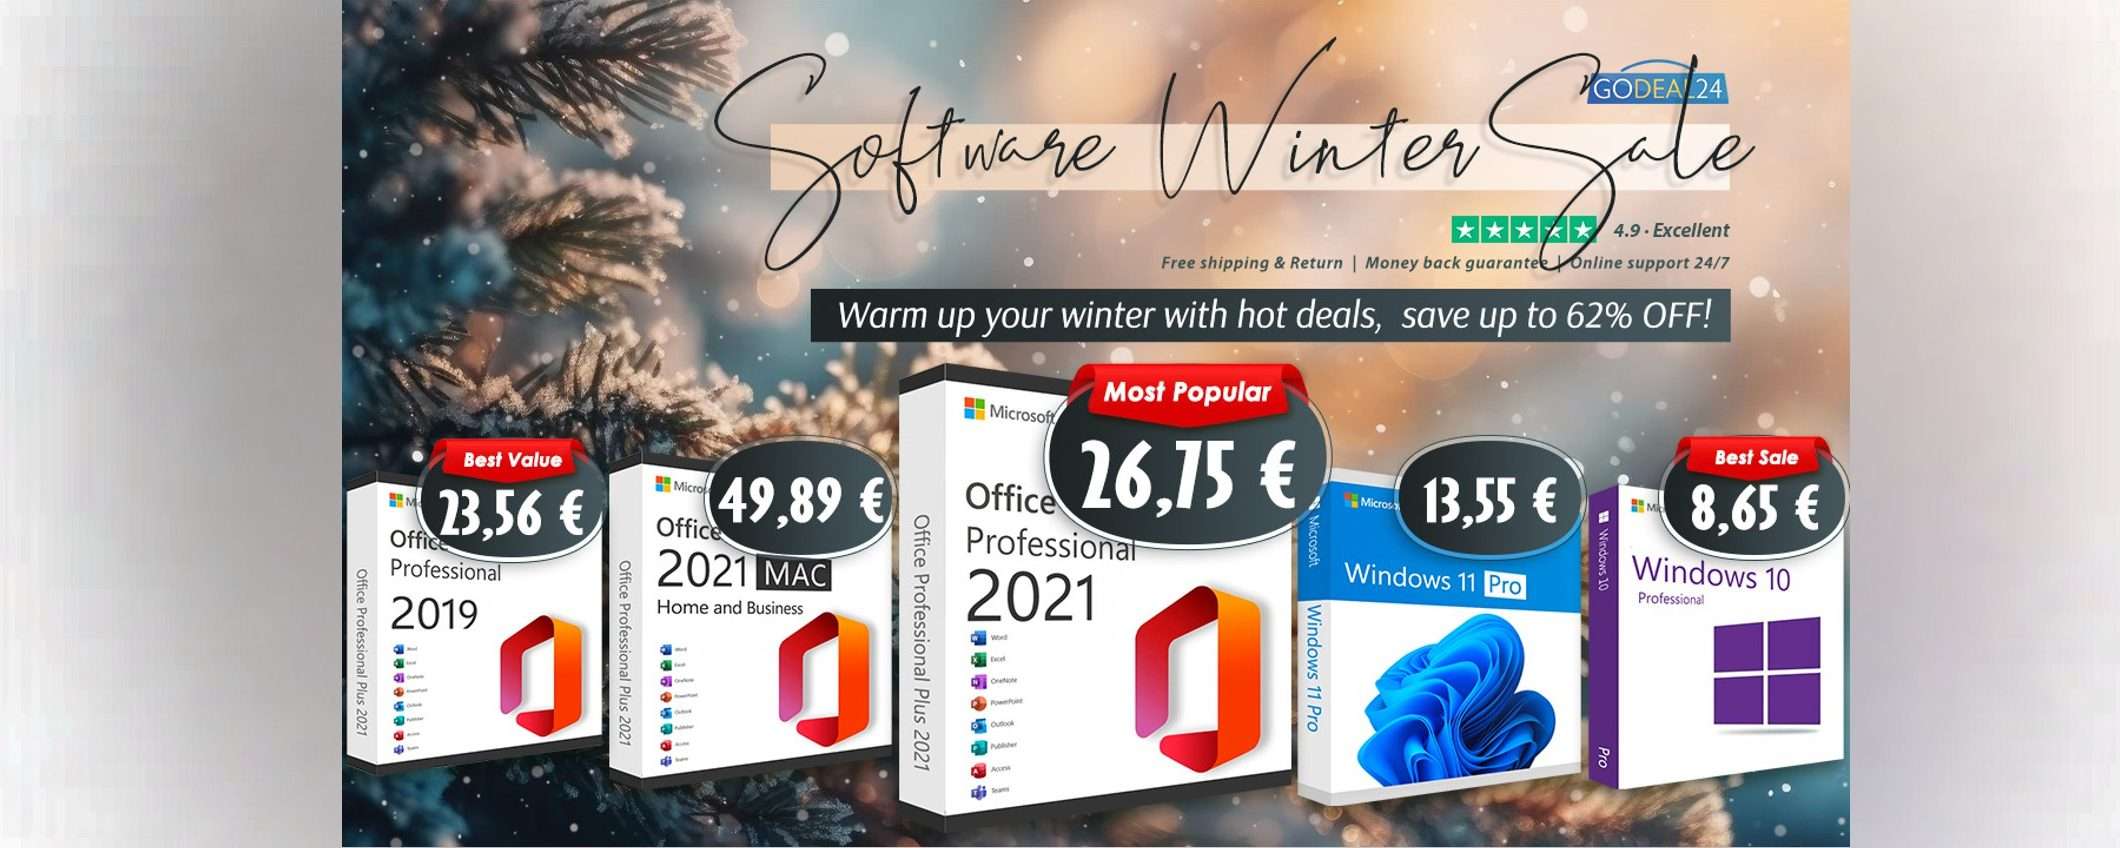 Office 2021 Pro a vita per soli 26,75€, Windows 11 Pro a 13,65€: ultima chance